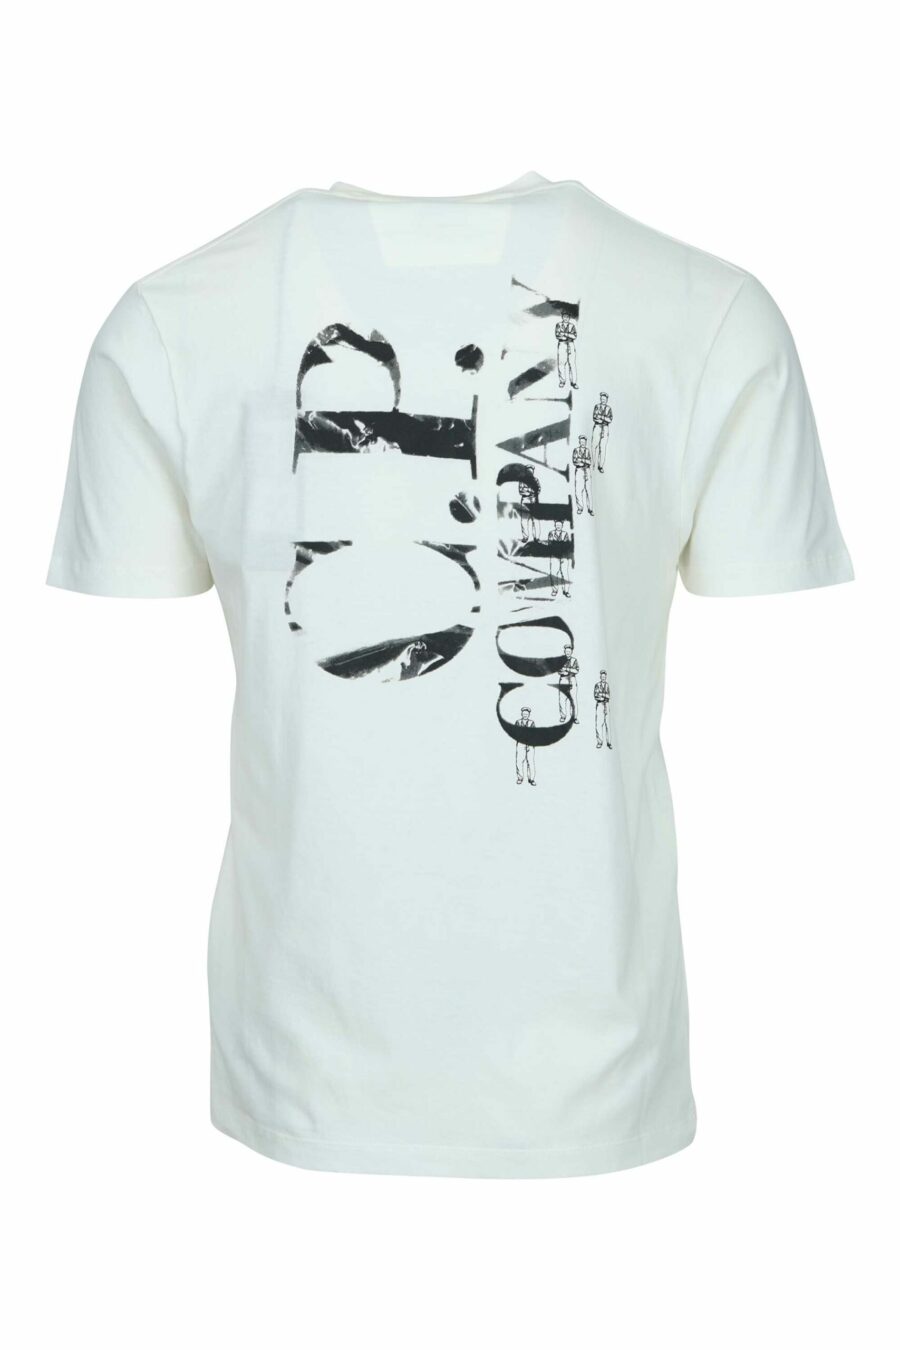 T-shirt blanc avec minilogue "cp" avec marins centrés - 7620943764369 1 scaled